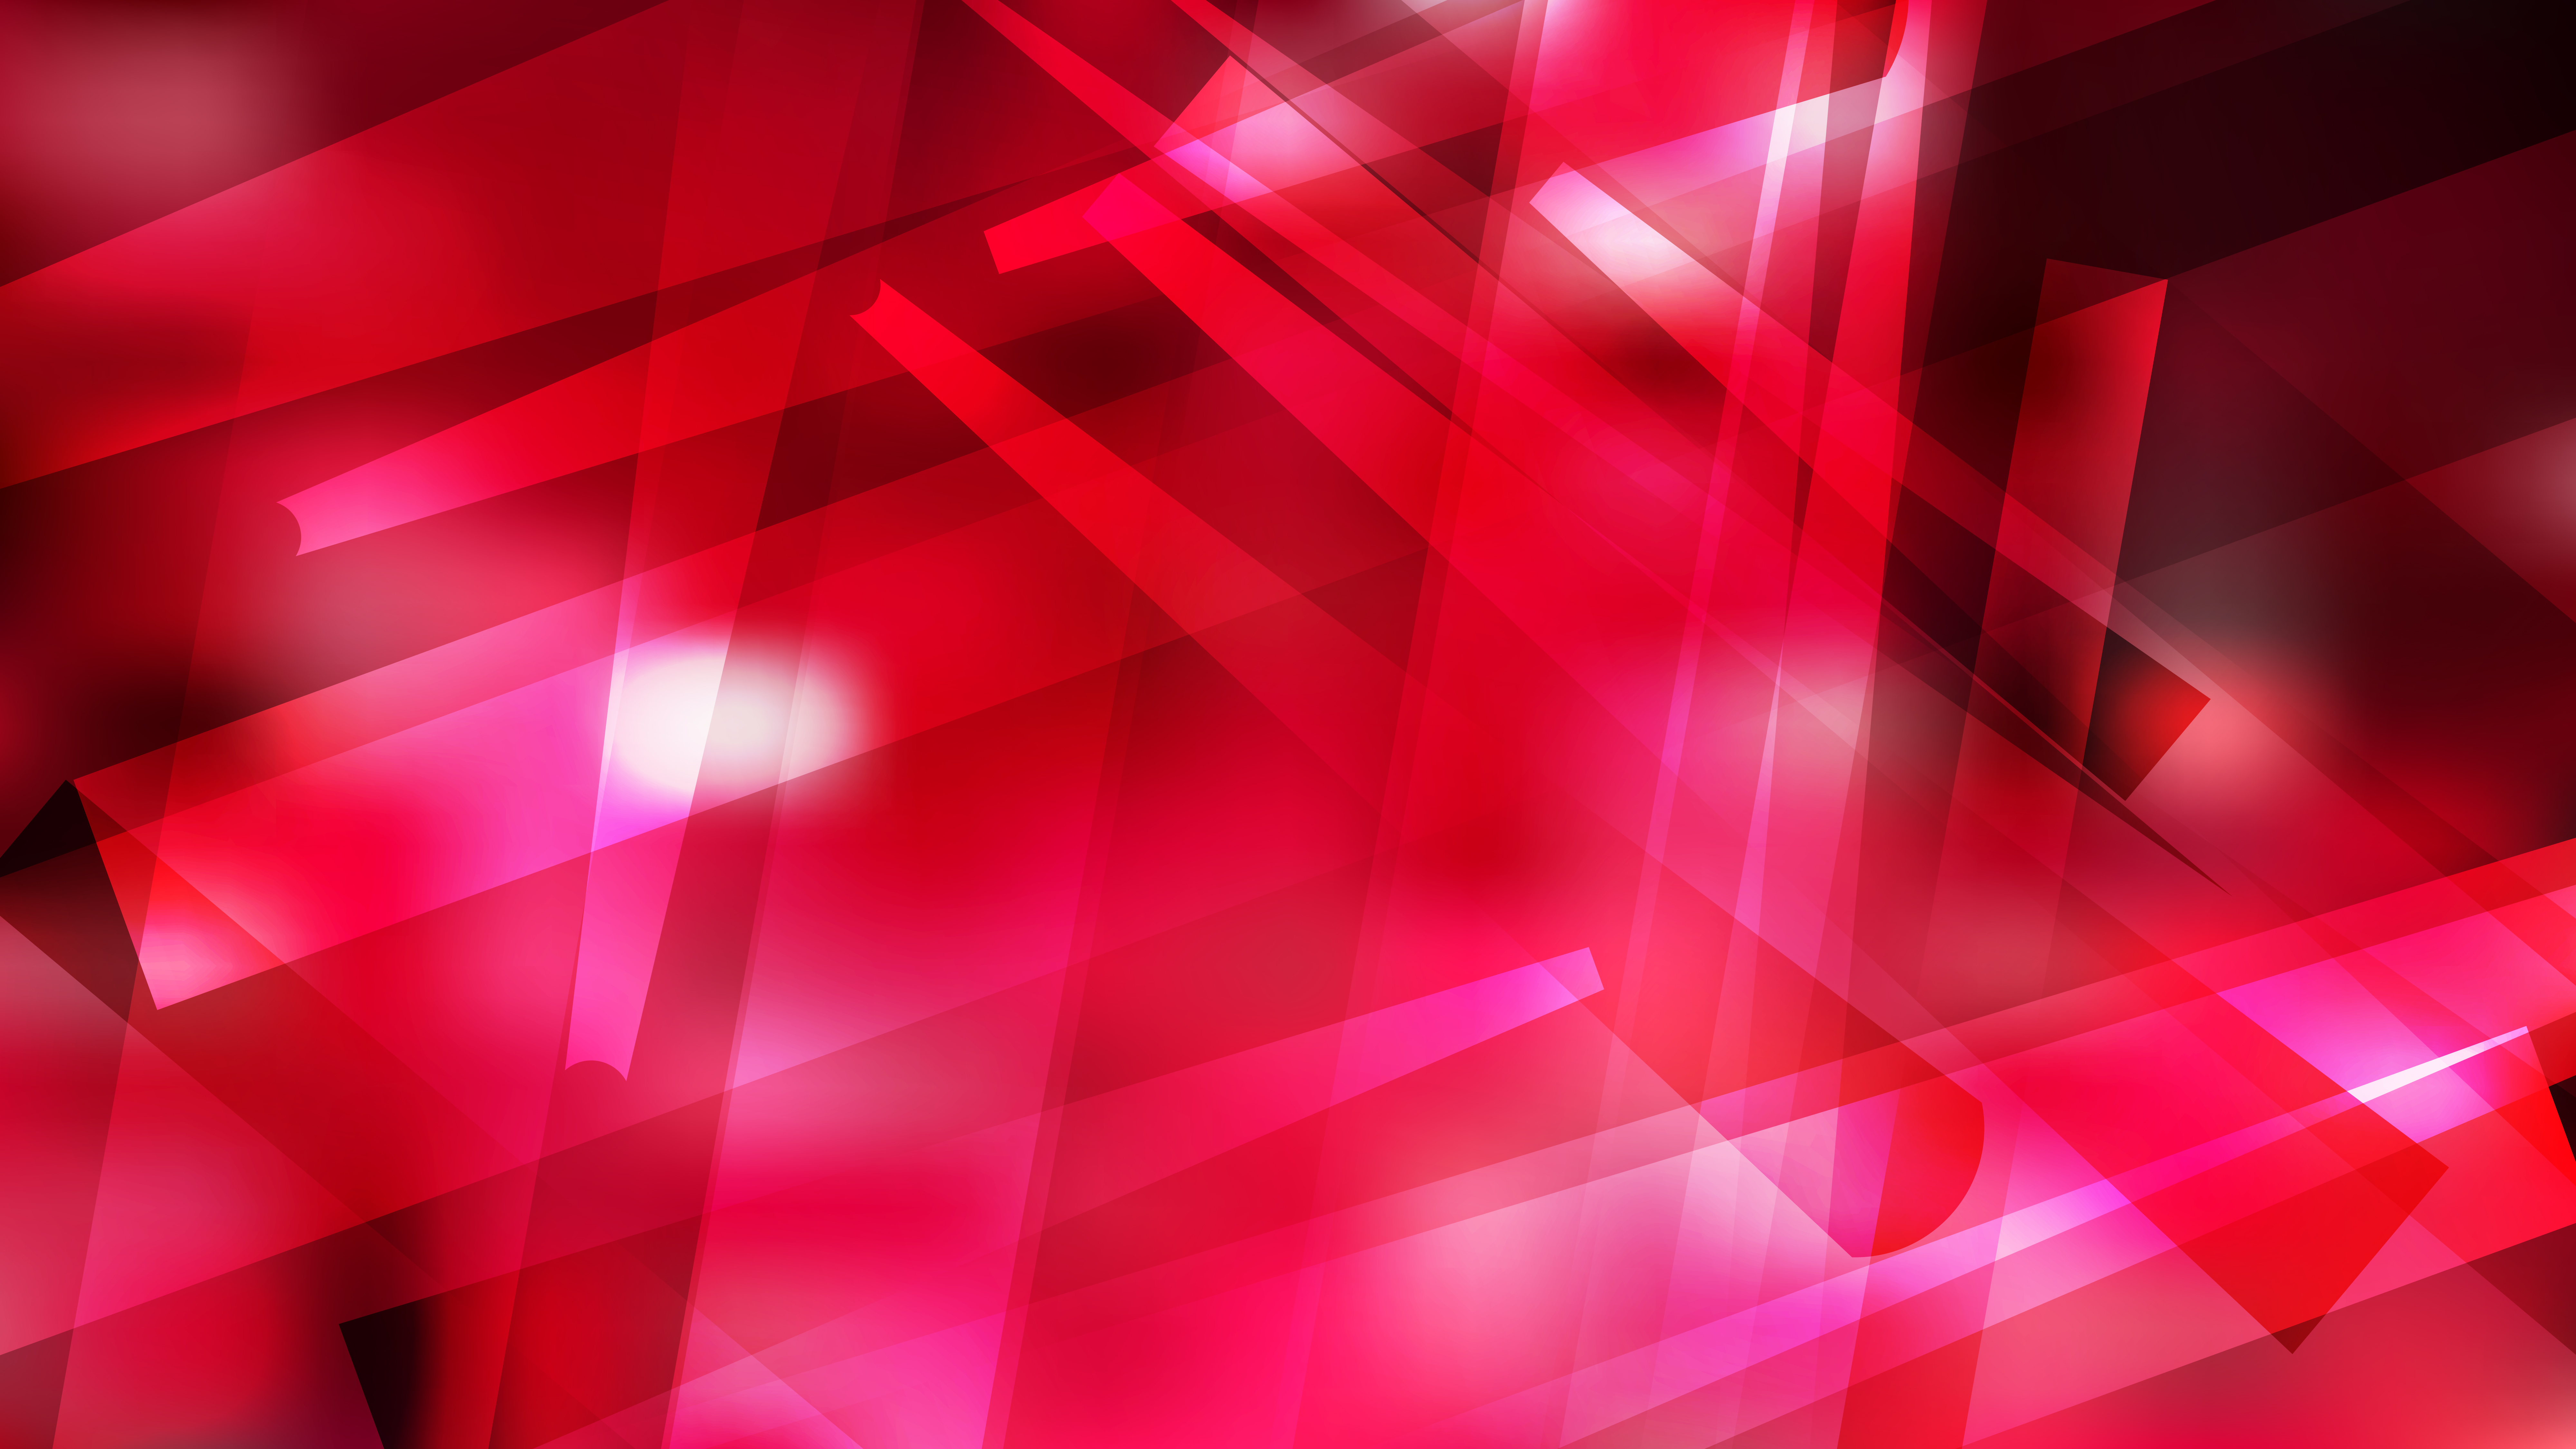 Bạn đang tìm kiếm một hình nền độc đáo để làm nổi bật thiết kế của mình? Hãy xem ngay bức hình nền hình học đỏ hồng và đen miễn phí với đồ hoạ vectơ tuyệt đẹp trên Shutterstock. Hình ảnh này sẽ mở rộng sự sáng tạo của bạn với sự kết hợp phối màu tinh tế.